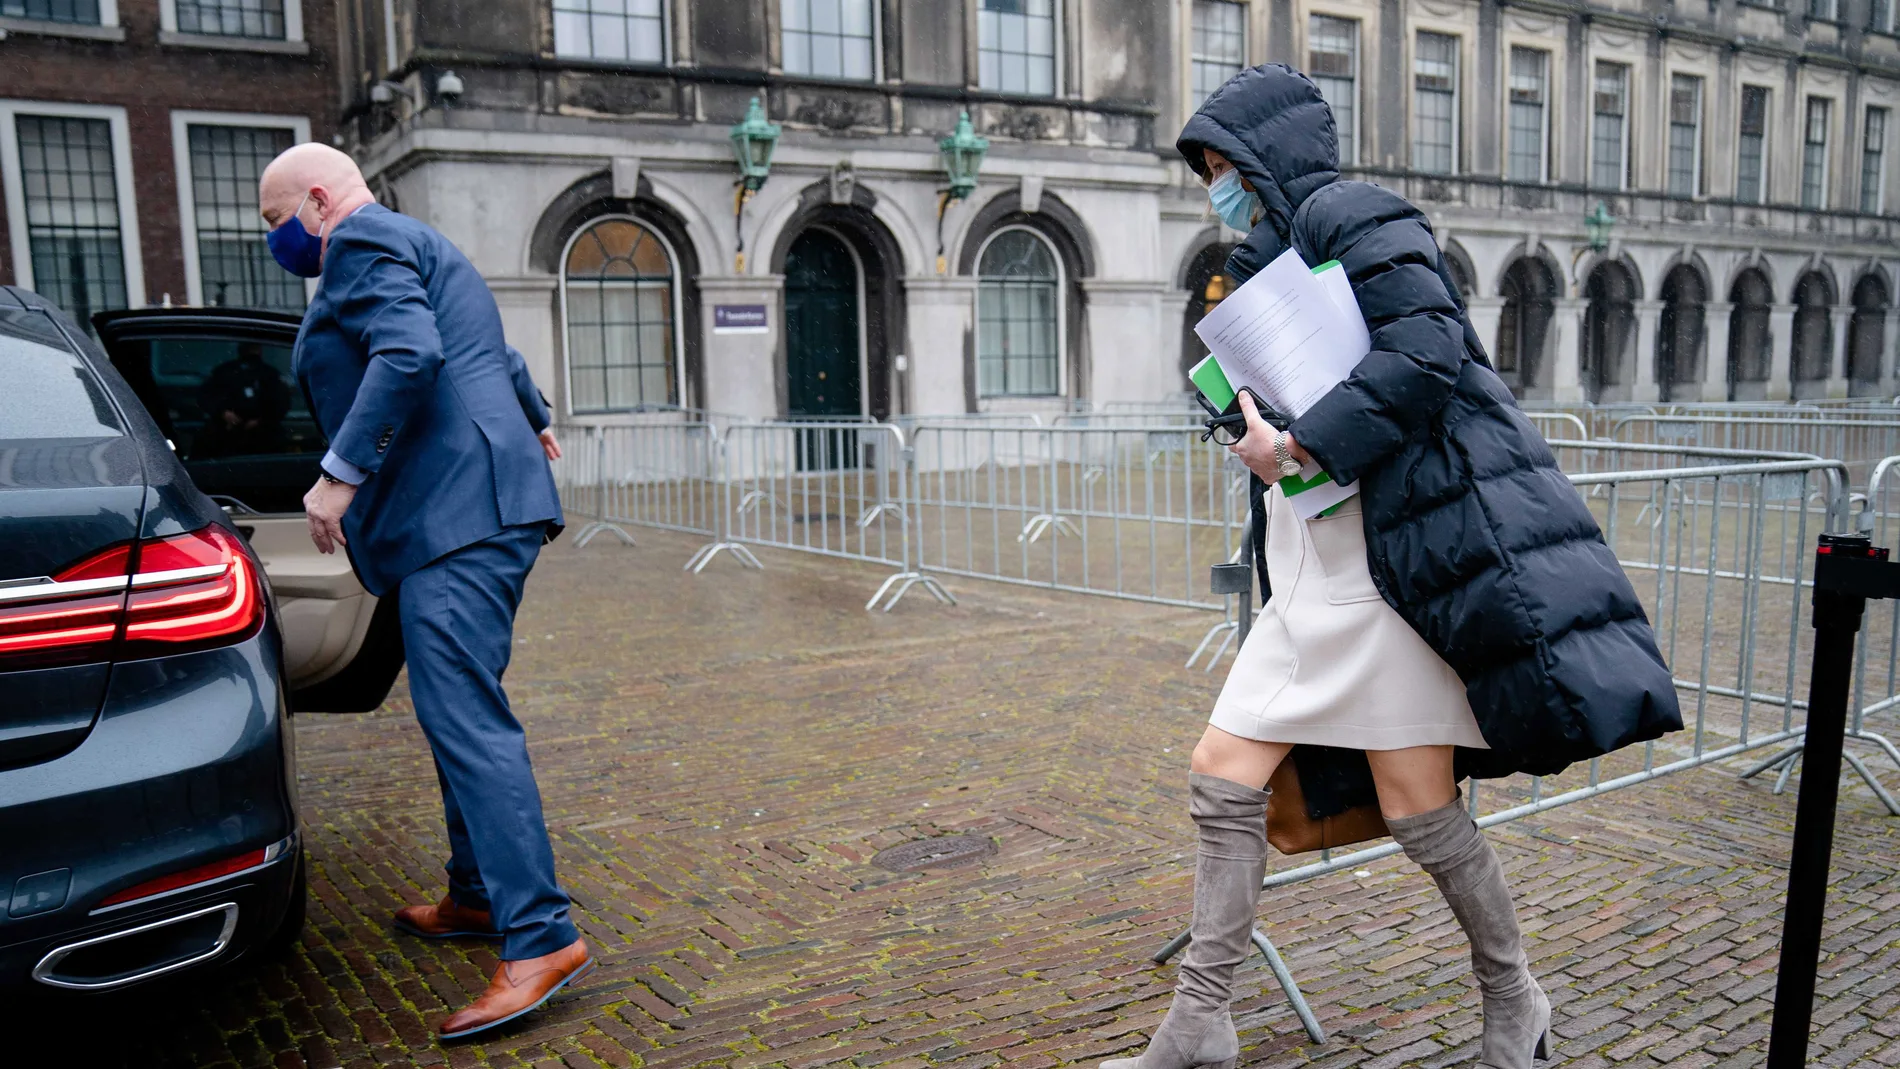 La ministra en funciones del Interior, Kajsa Ollongren, tuvo que abandonar la sede del Parlamento neerlandés minutos después de llegar al enterarse de que había dado positivo